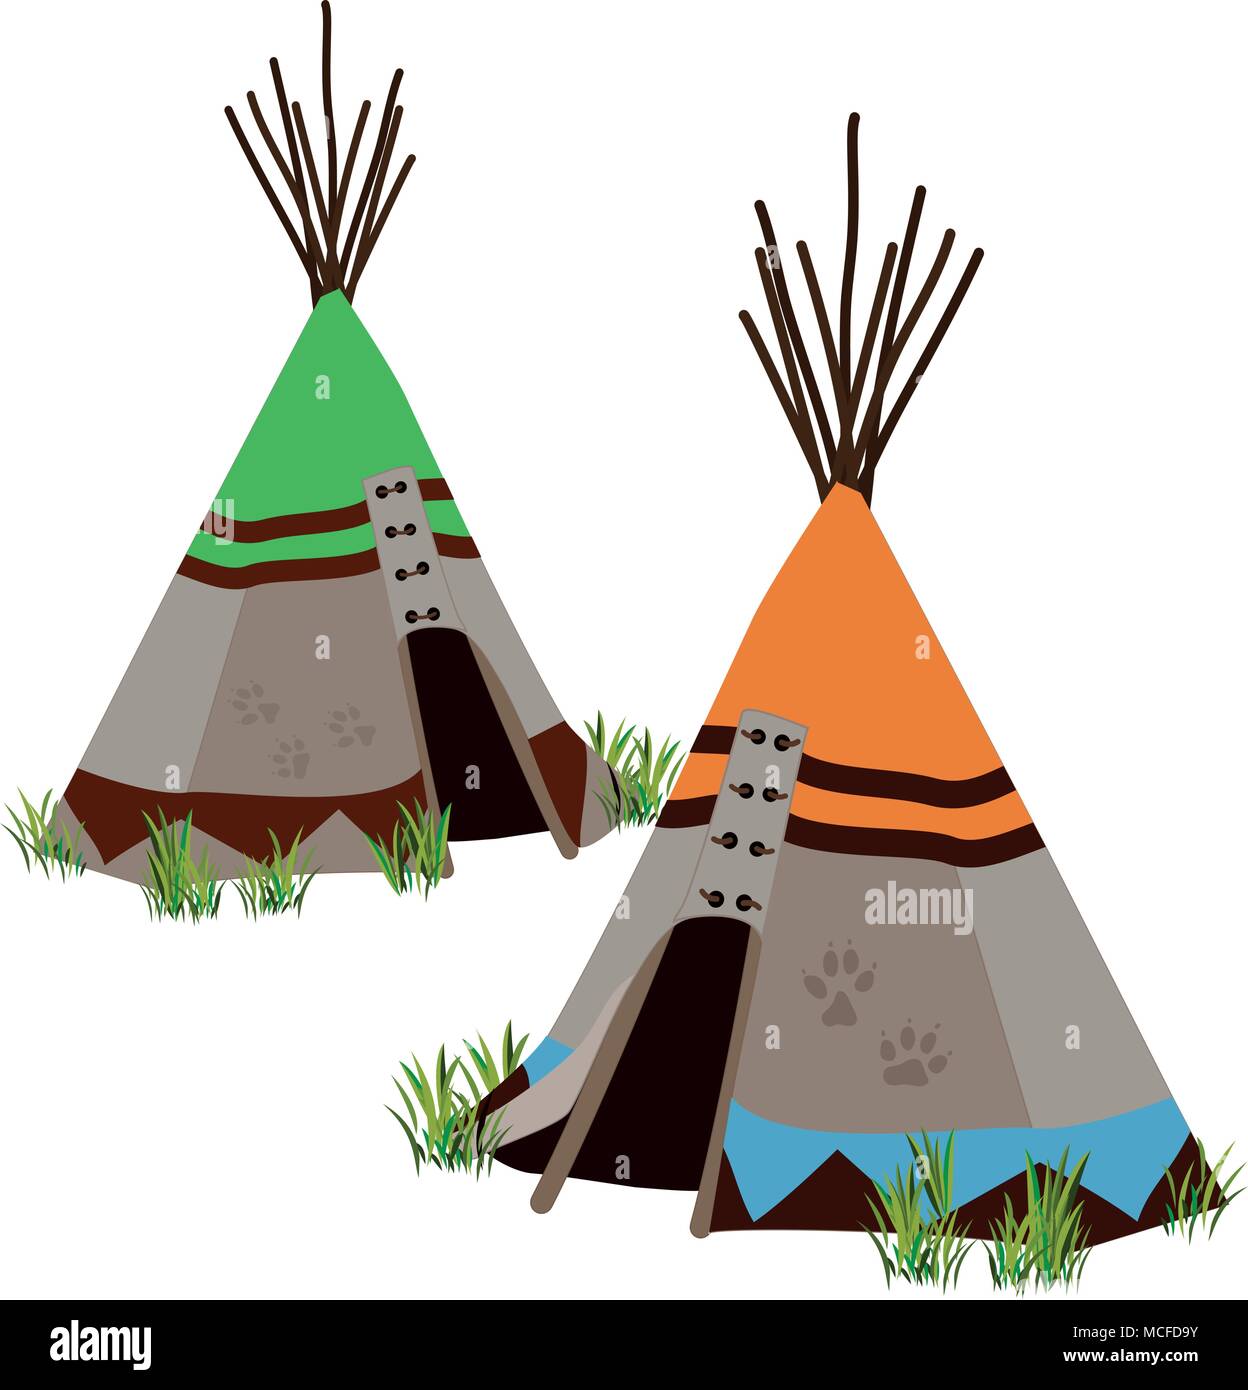 Wigwam, traditionelle Wohnung von indigenen Volk der Great Plains und kanadischen Prärien Nordamerikas. Stylized Vector Illustration Stock Vektor